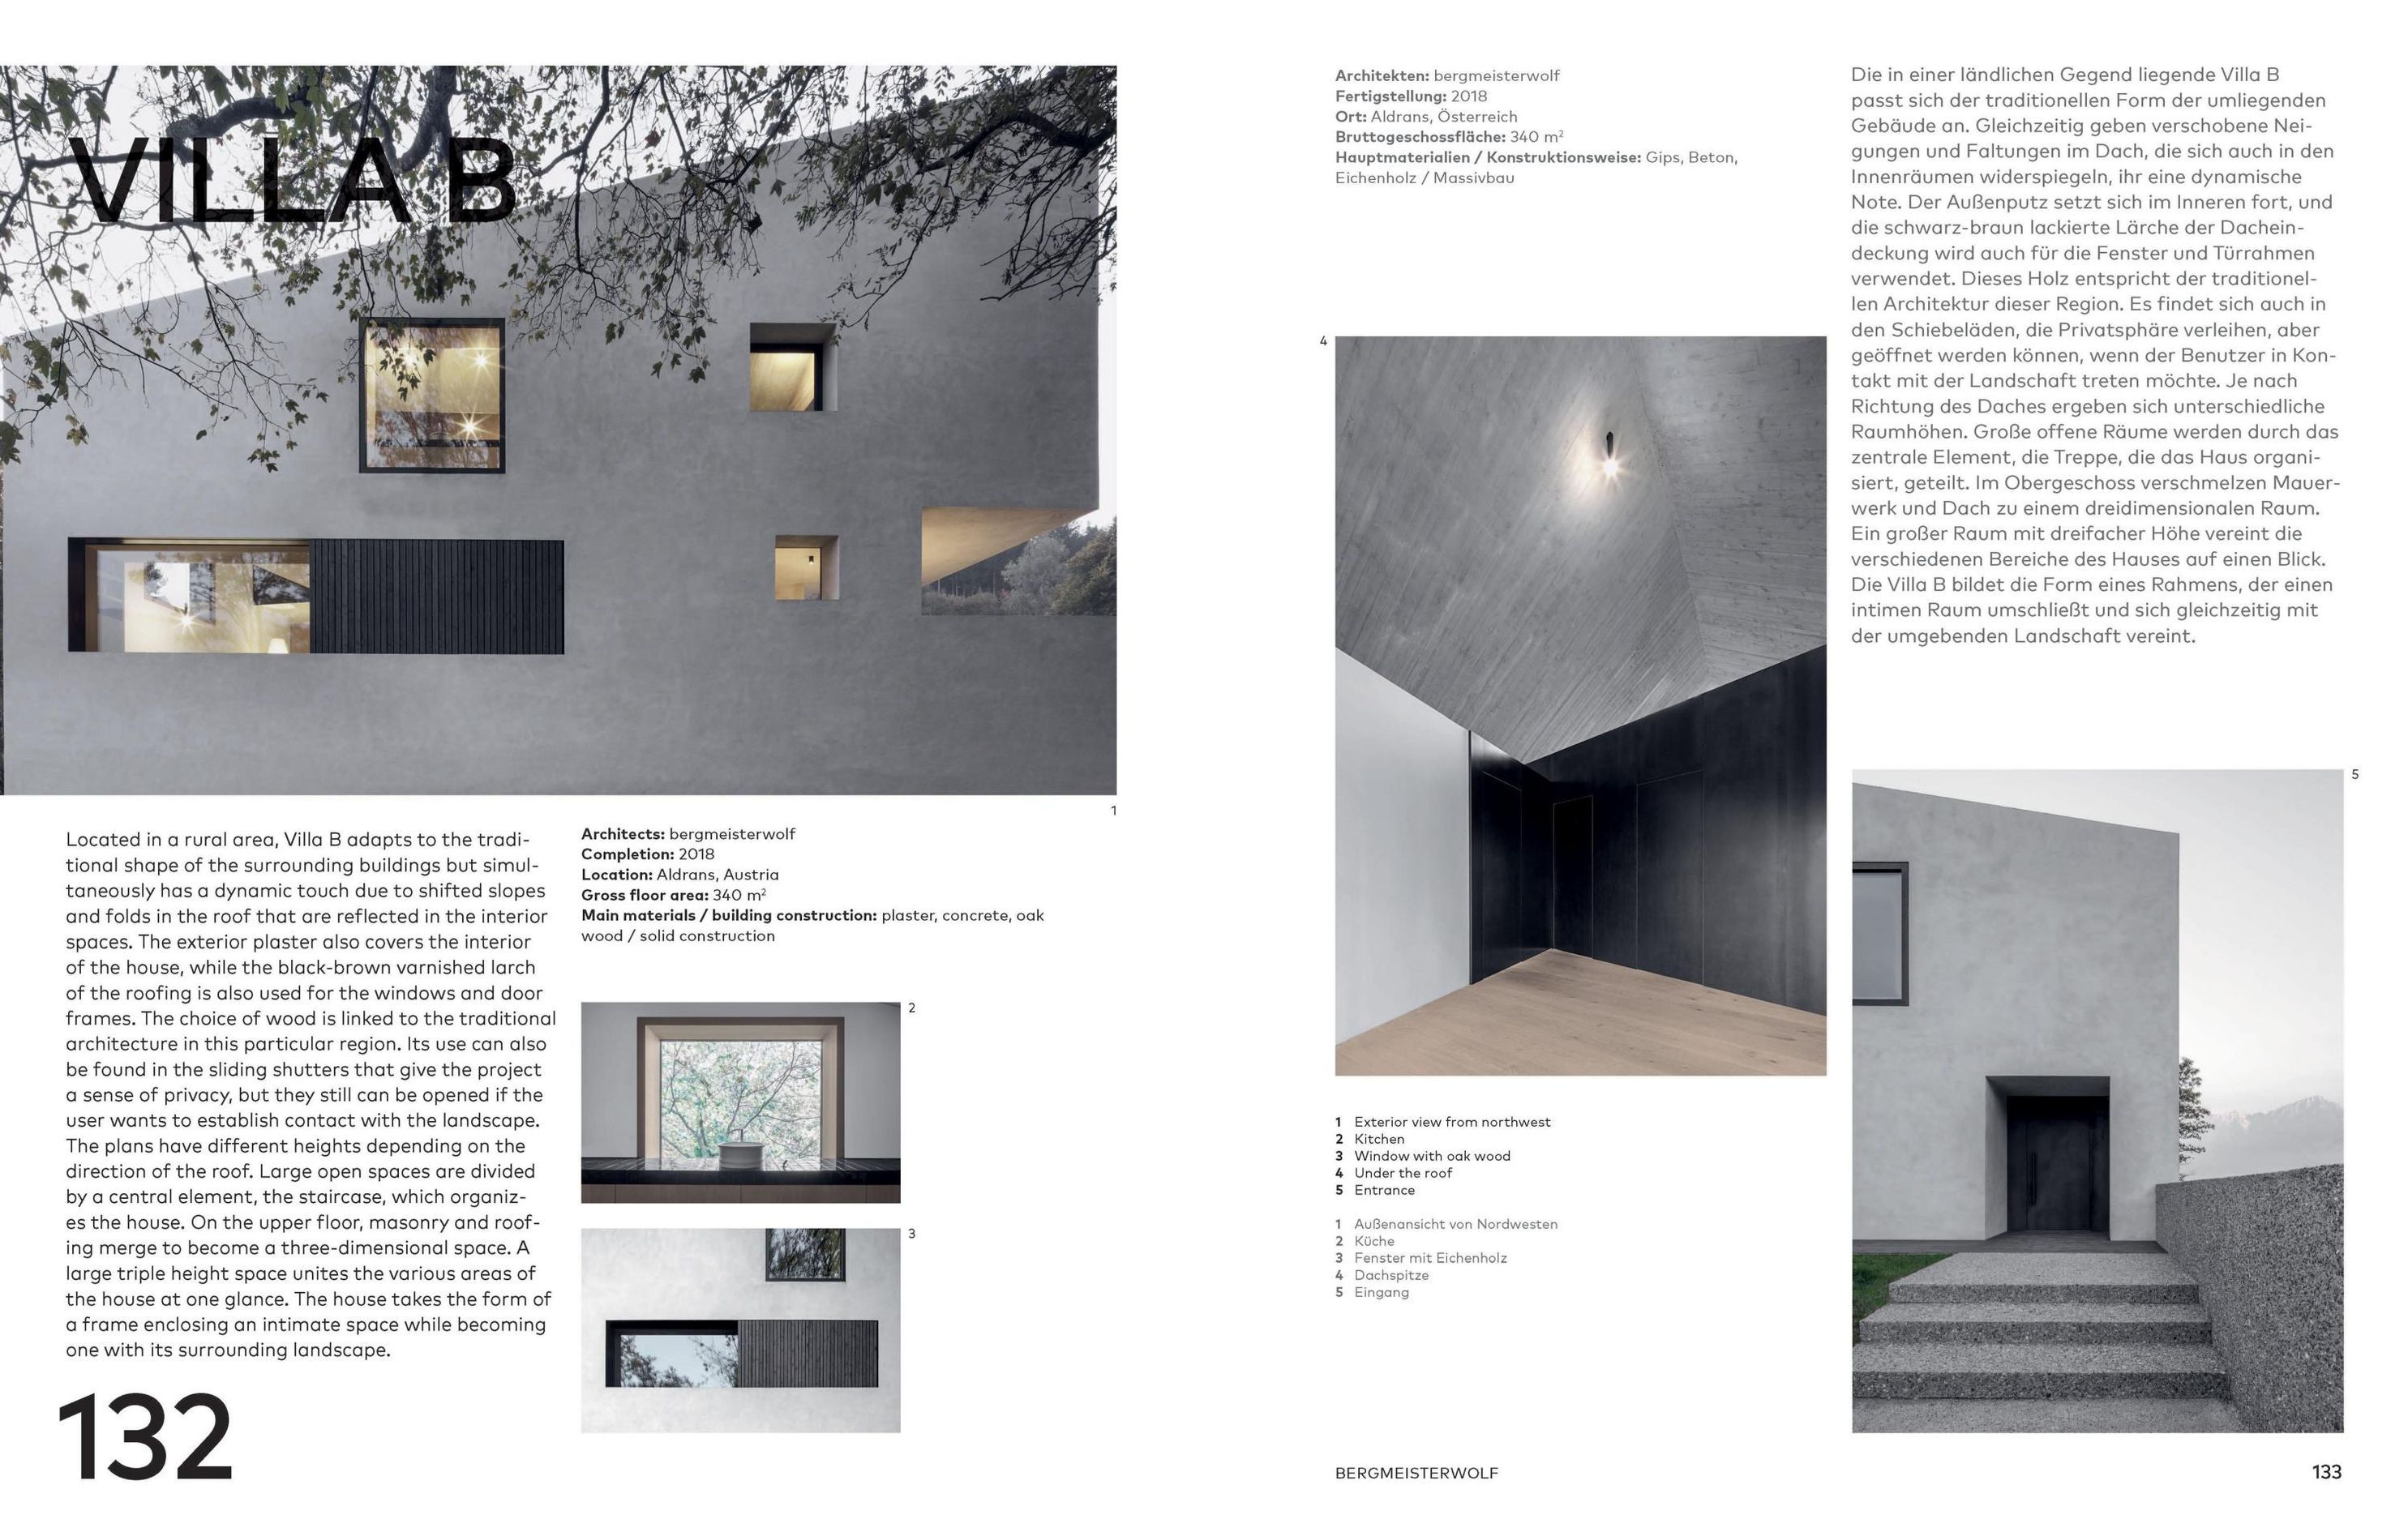 Architektenhäuser in der Schweiz & Österreich Single-Family Houses in  Switzerland & Austria | Weltbild.ch